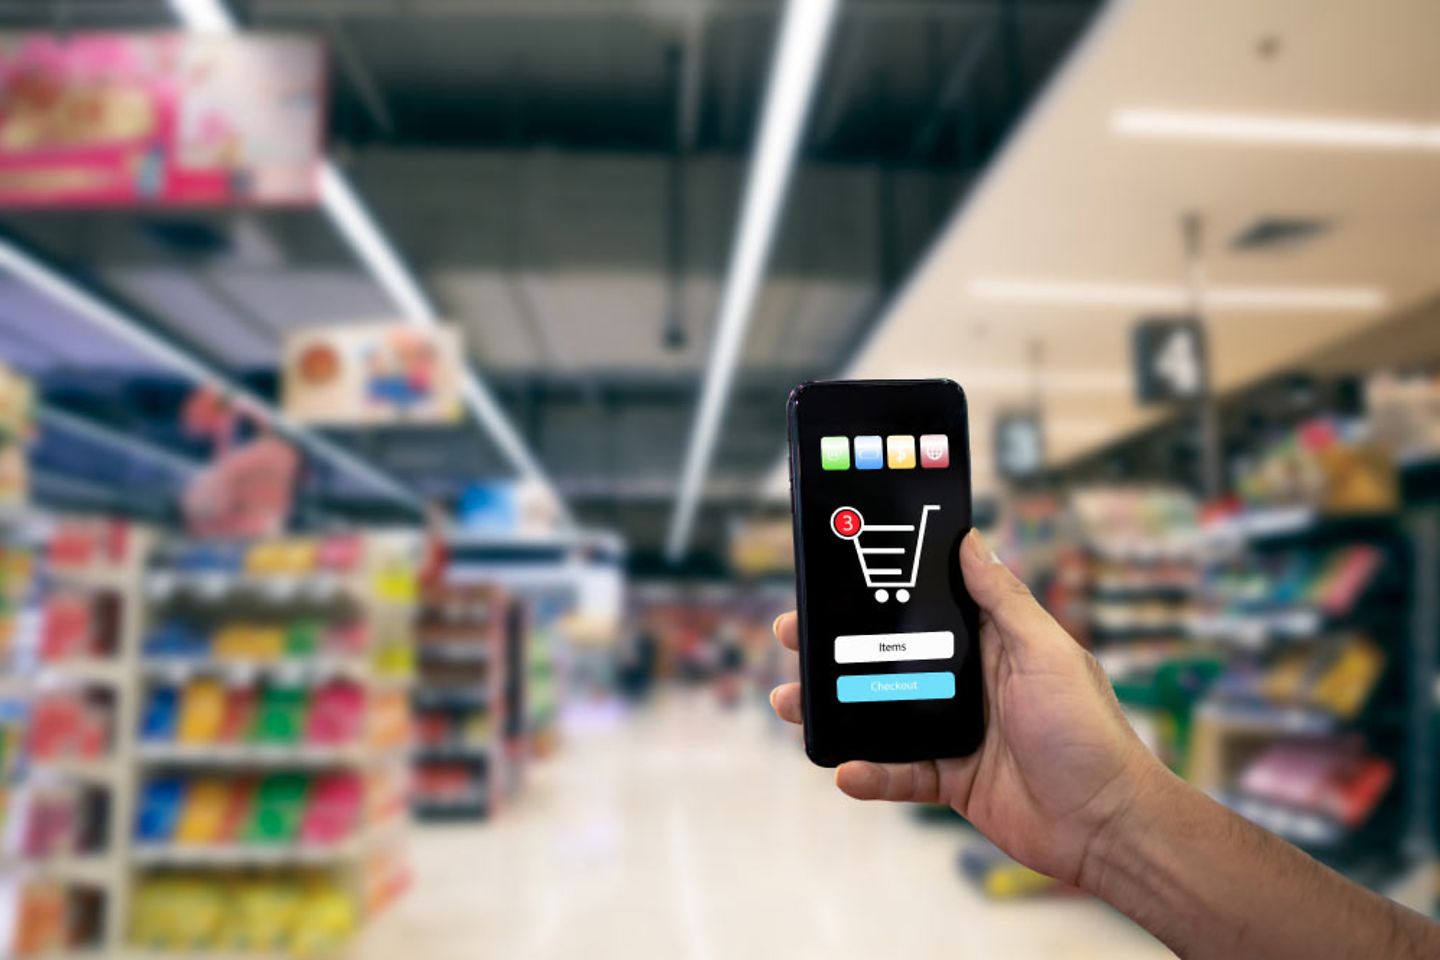 Eine Hand hält ein Smartphone, das einen Einkaufswagen zeigt, im Hintergrund befinden sich Supermarktregale